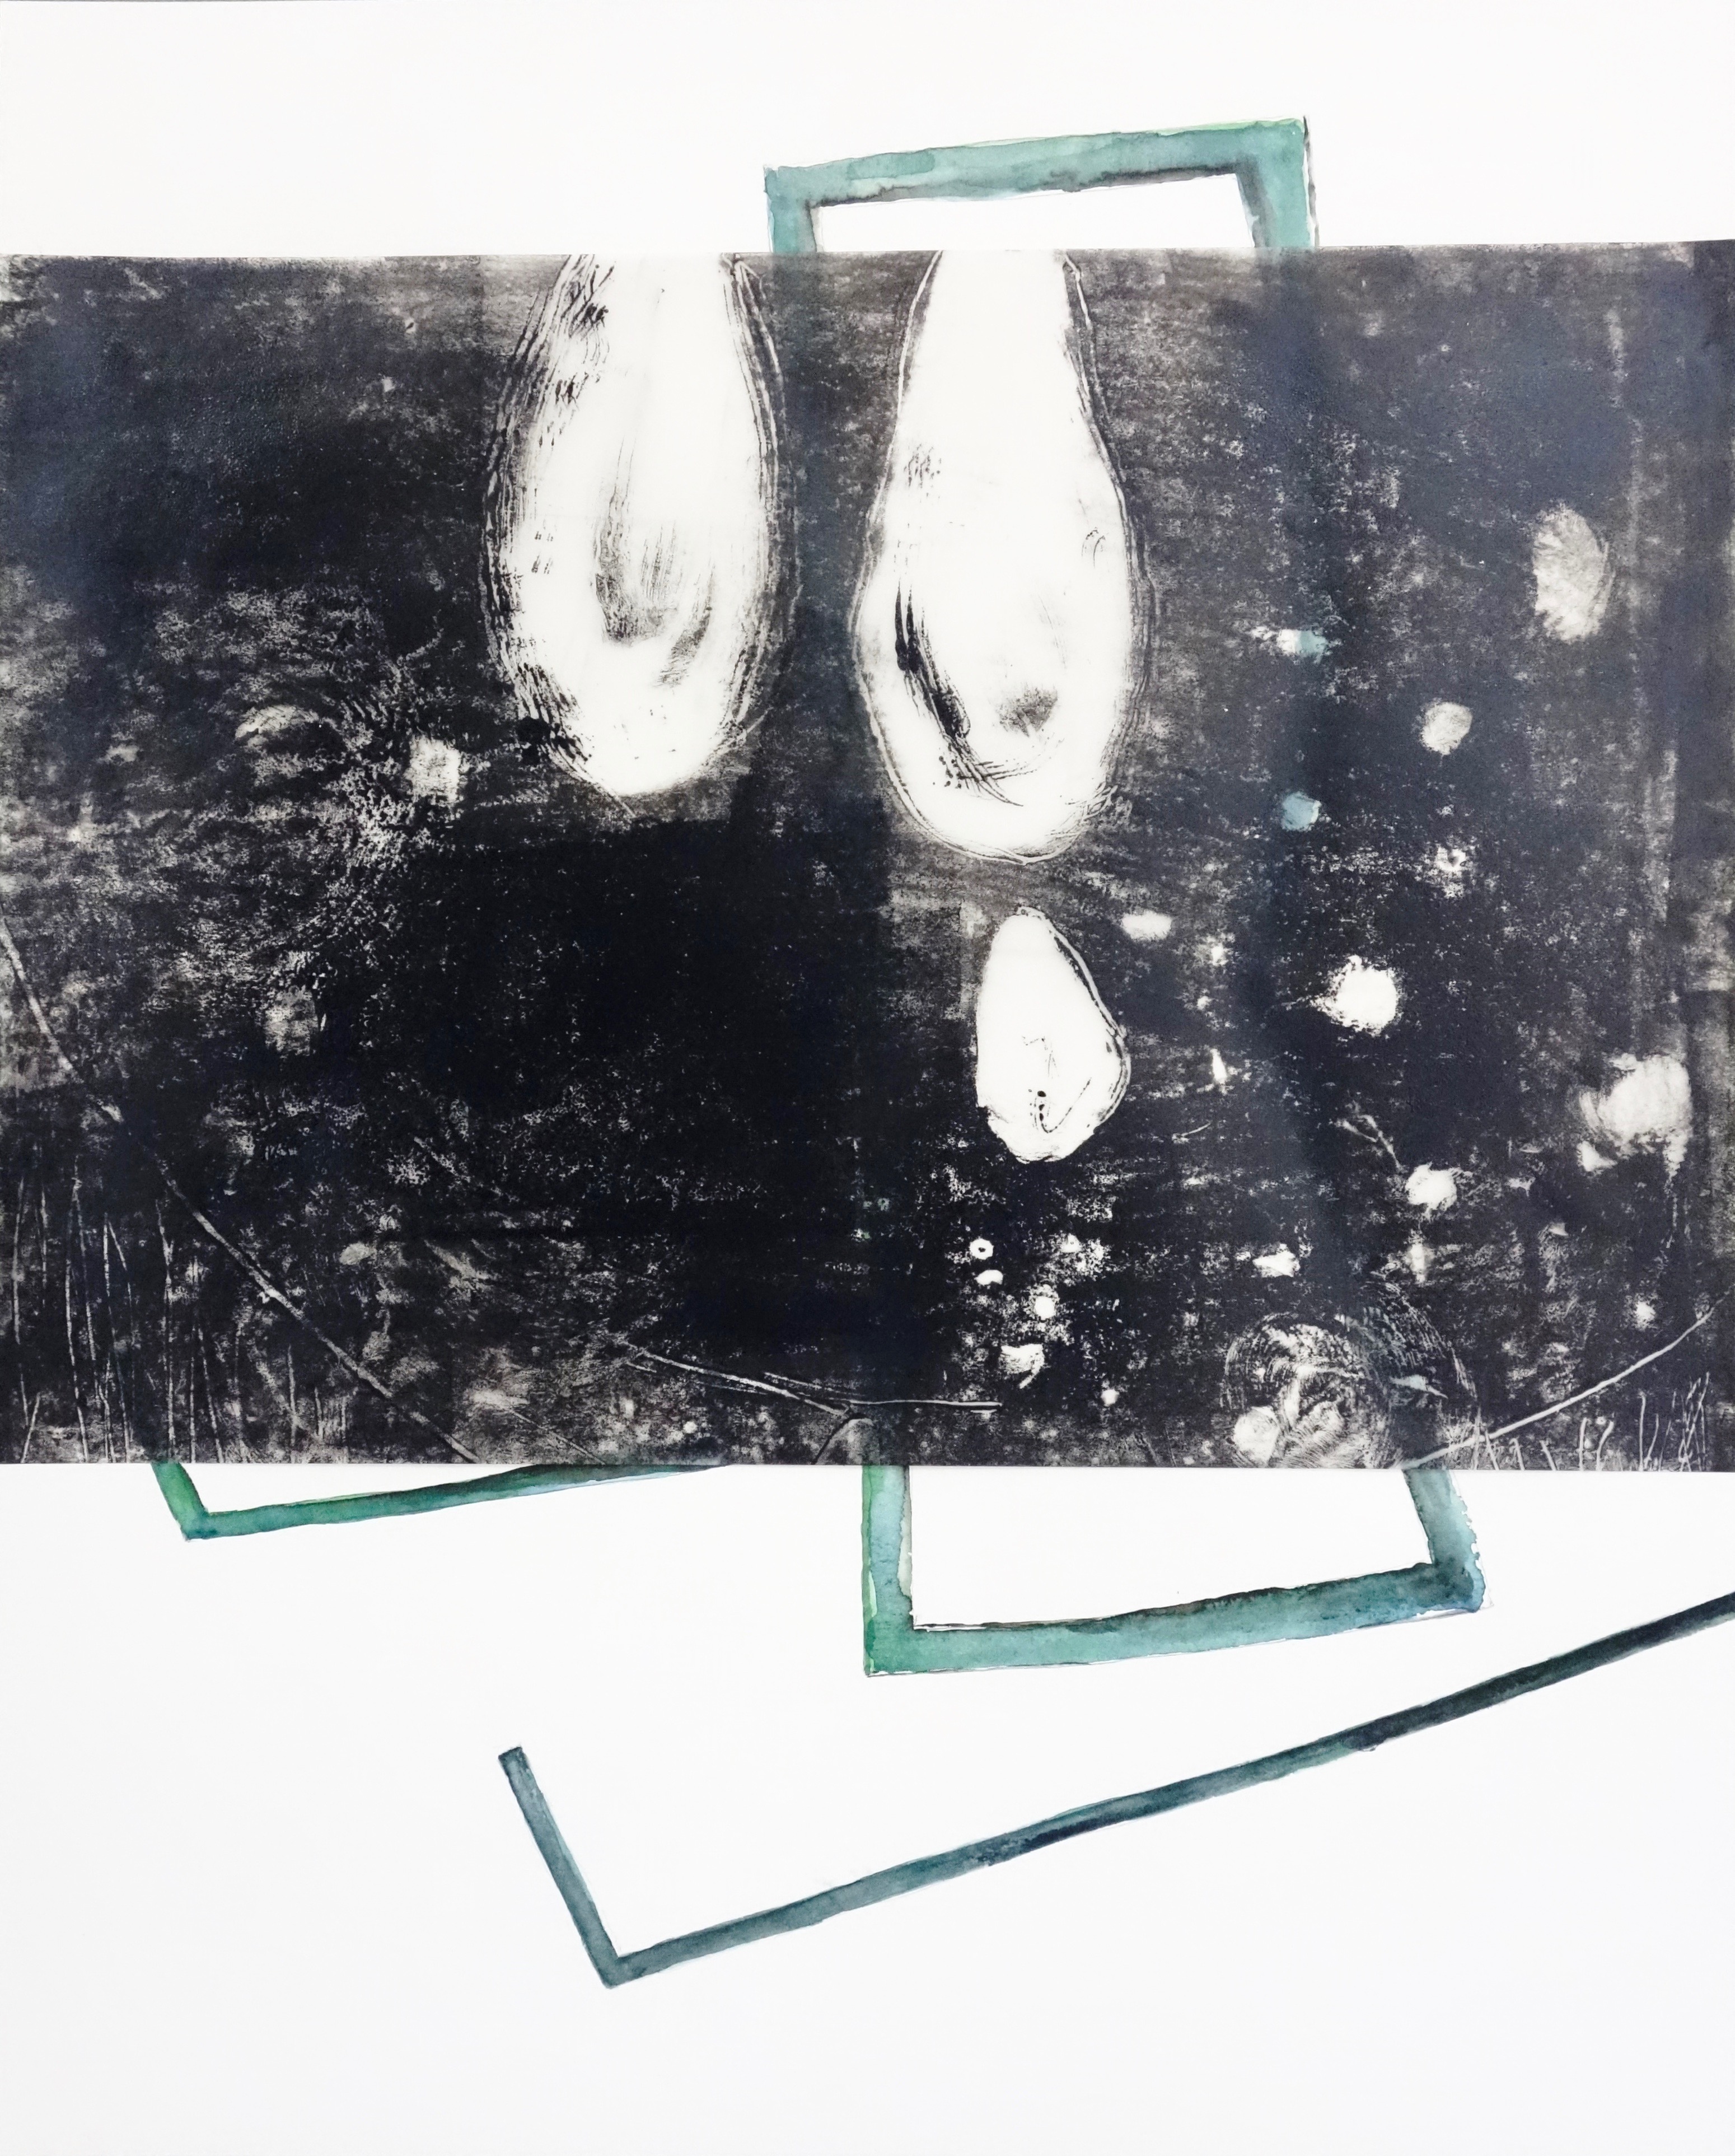 Versch. Materialien auf Papier und Transparentpapier, 2021, 50 x 40 cm